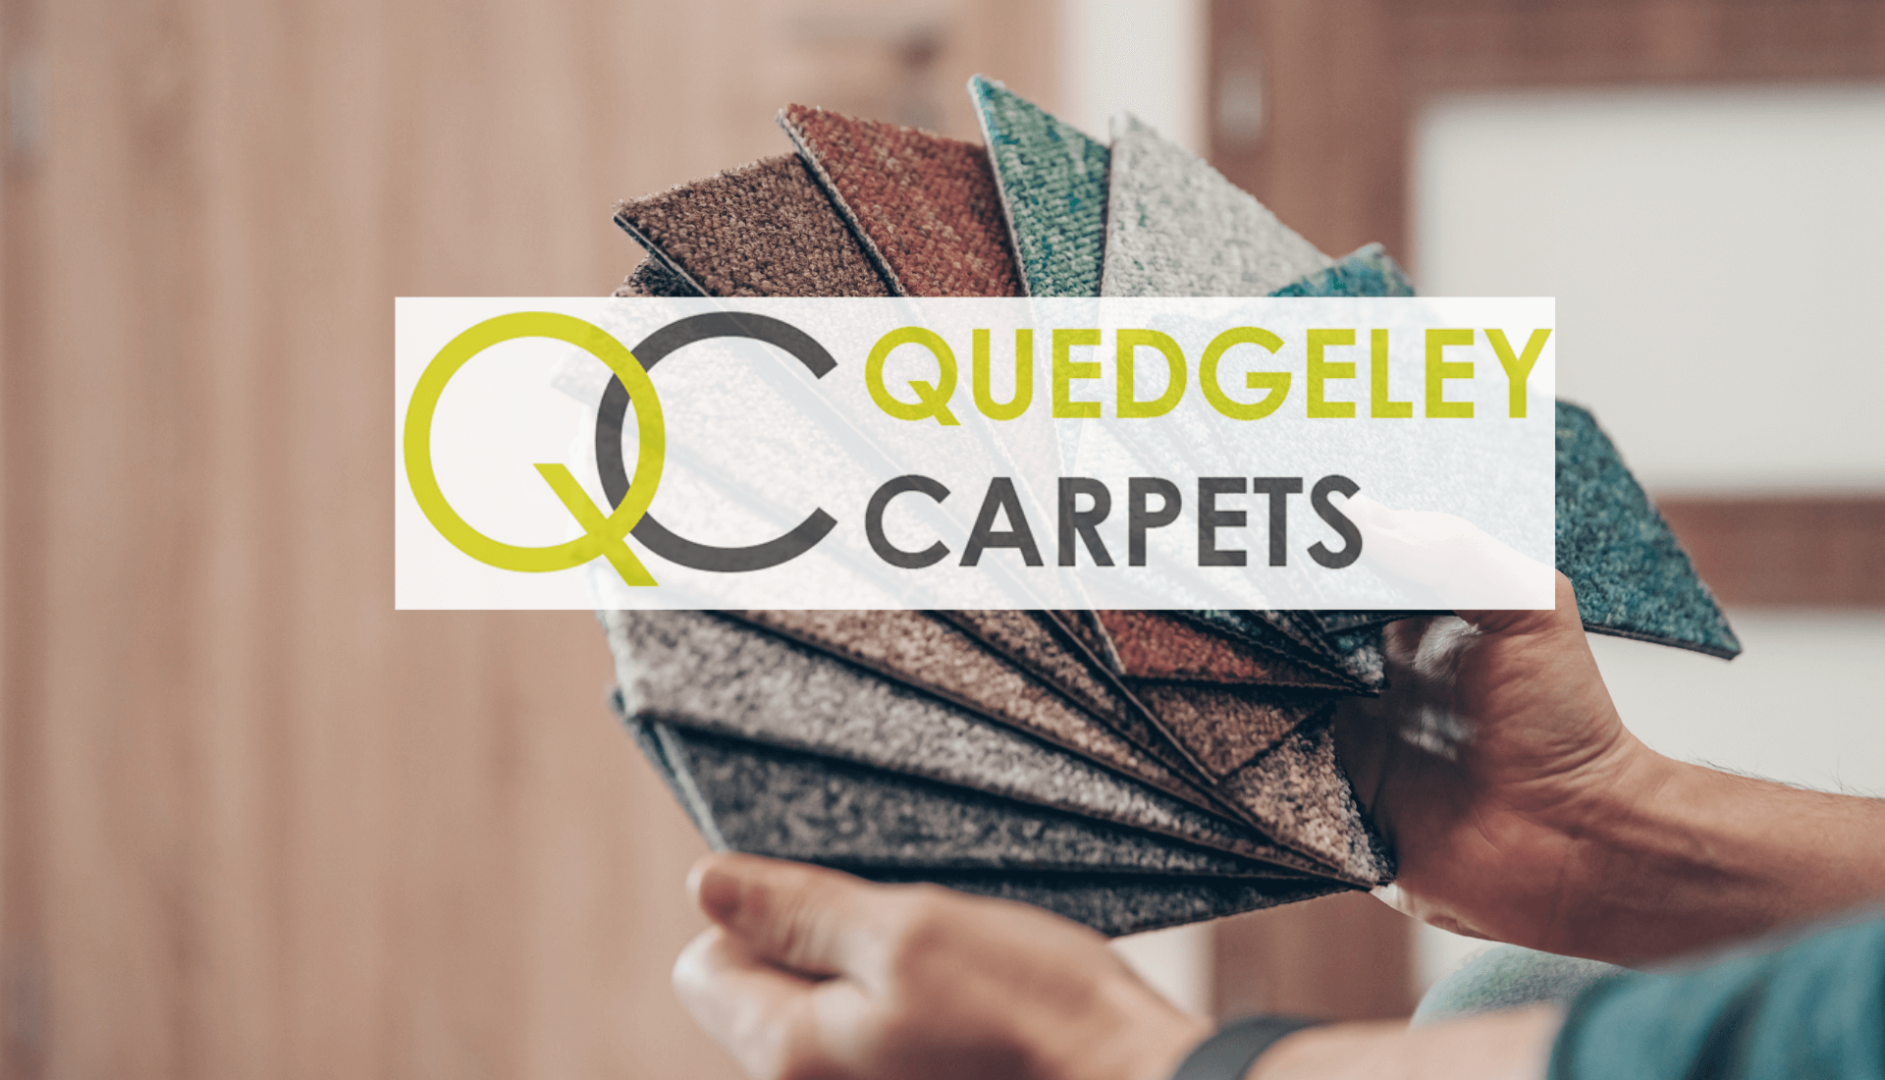 Quedgeley Carpets in Tewkesbury